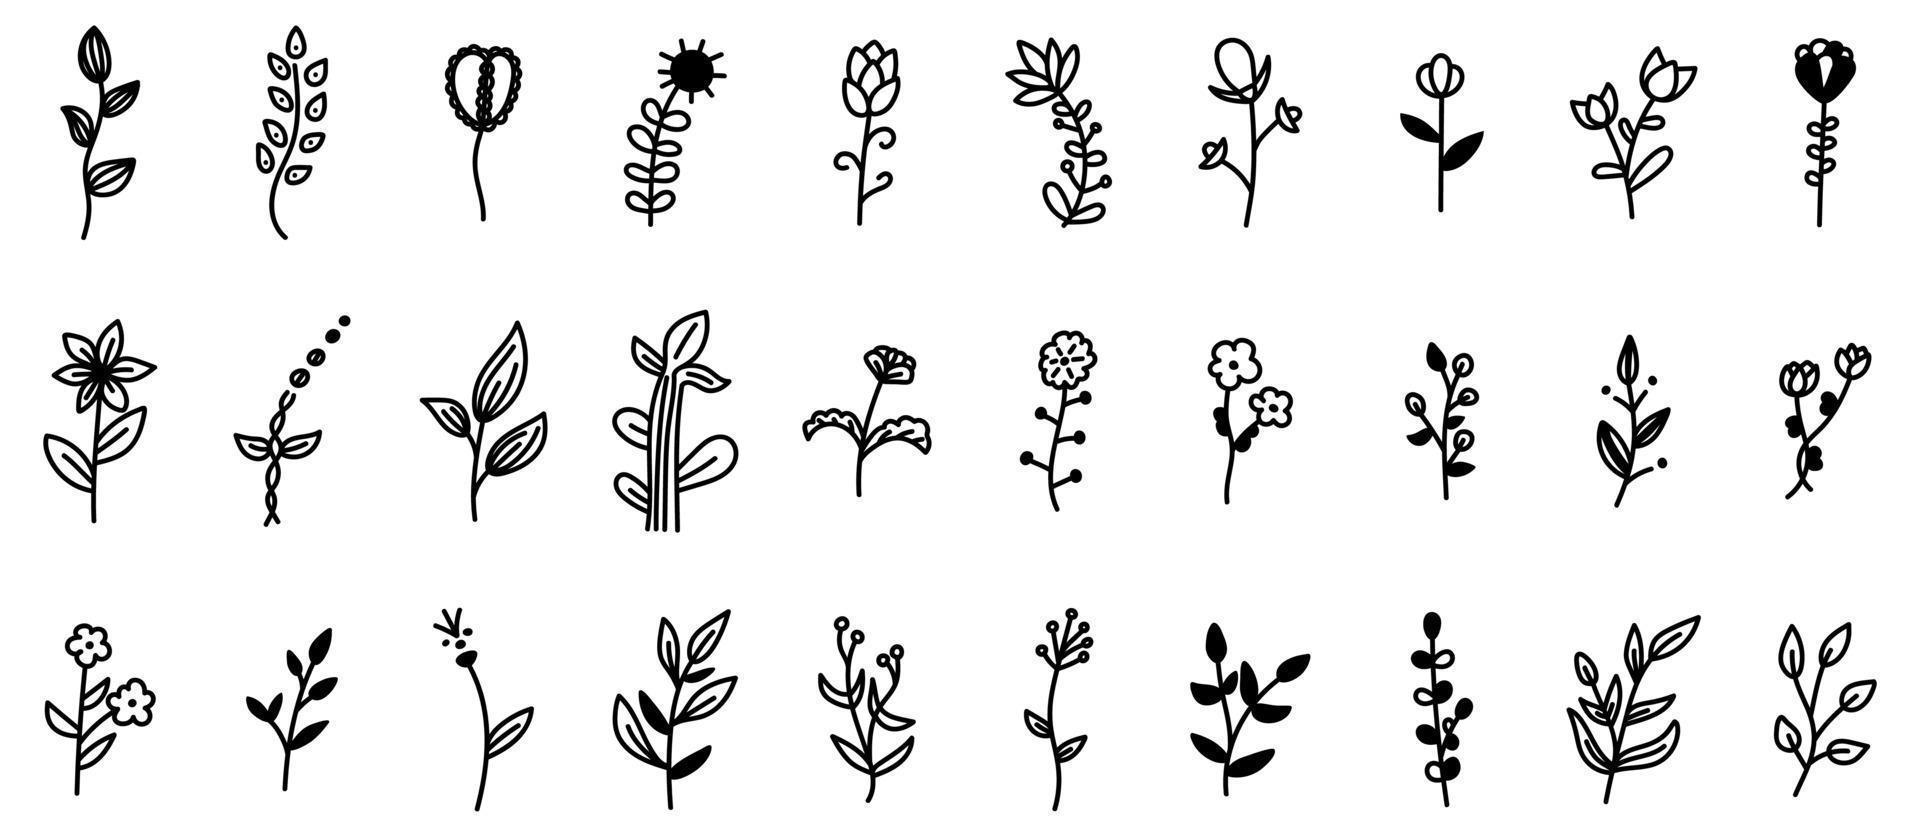 ensemble de fleurs et de branches de doodle avec des éléments décoratifs de feuilles. conception d'illustration vectorielle florale et botanique, éléments isolés dessinés à la main. vecteur